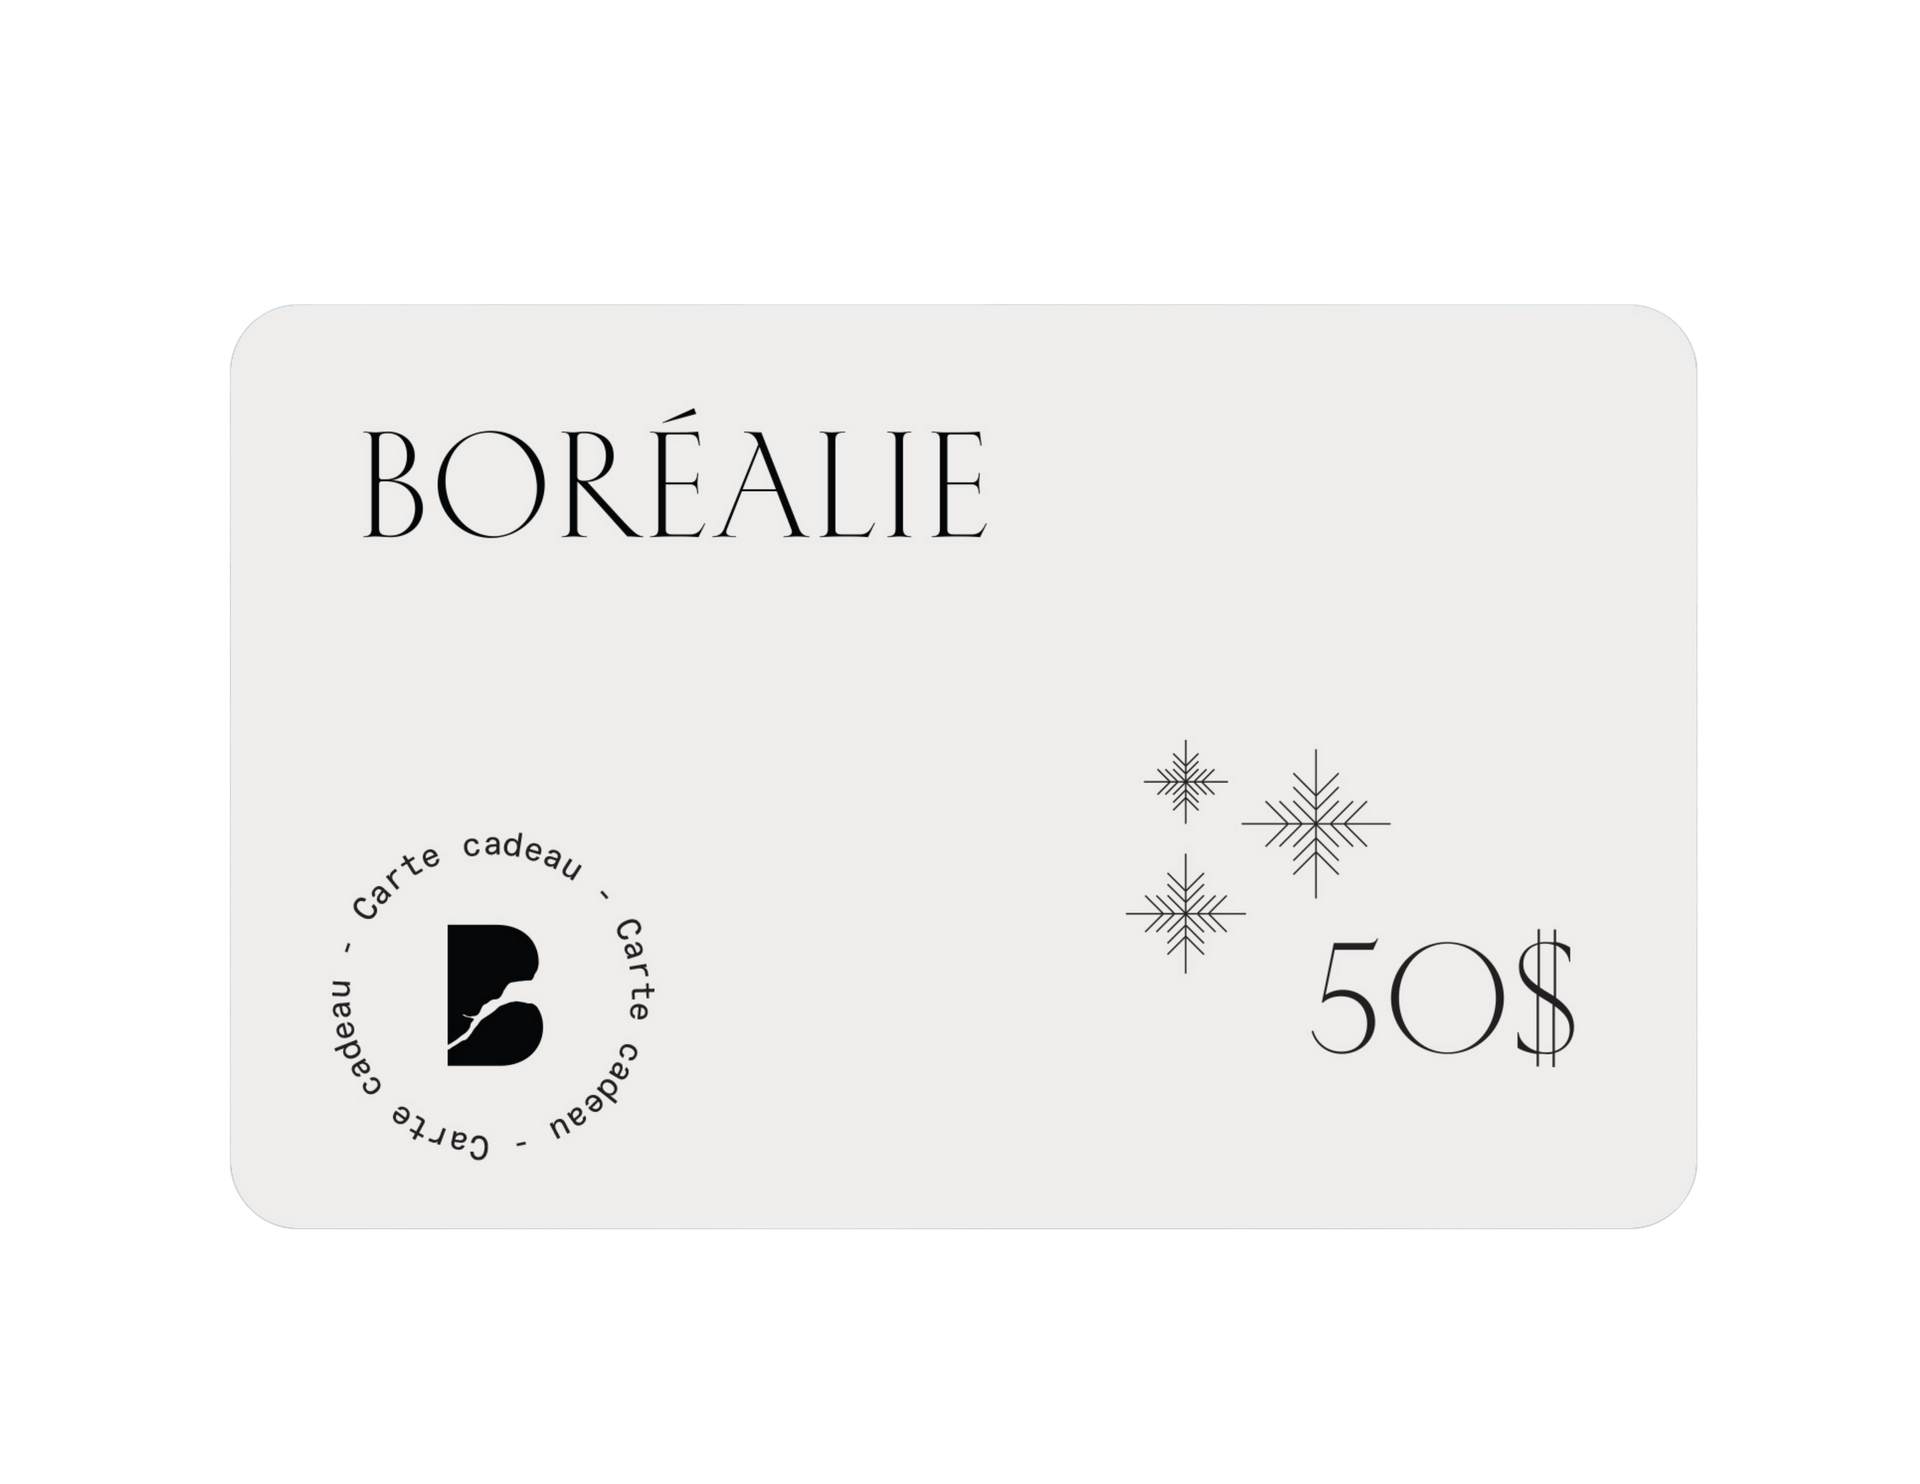 Boréalie's gift card